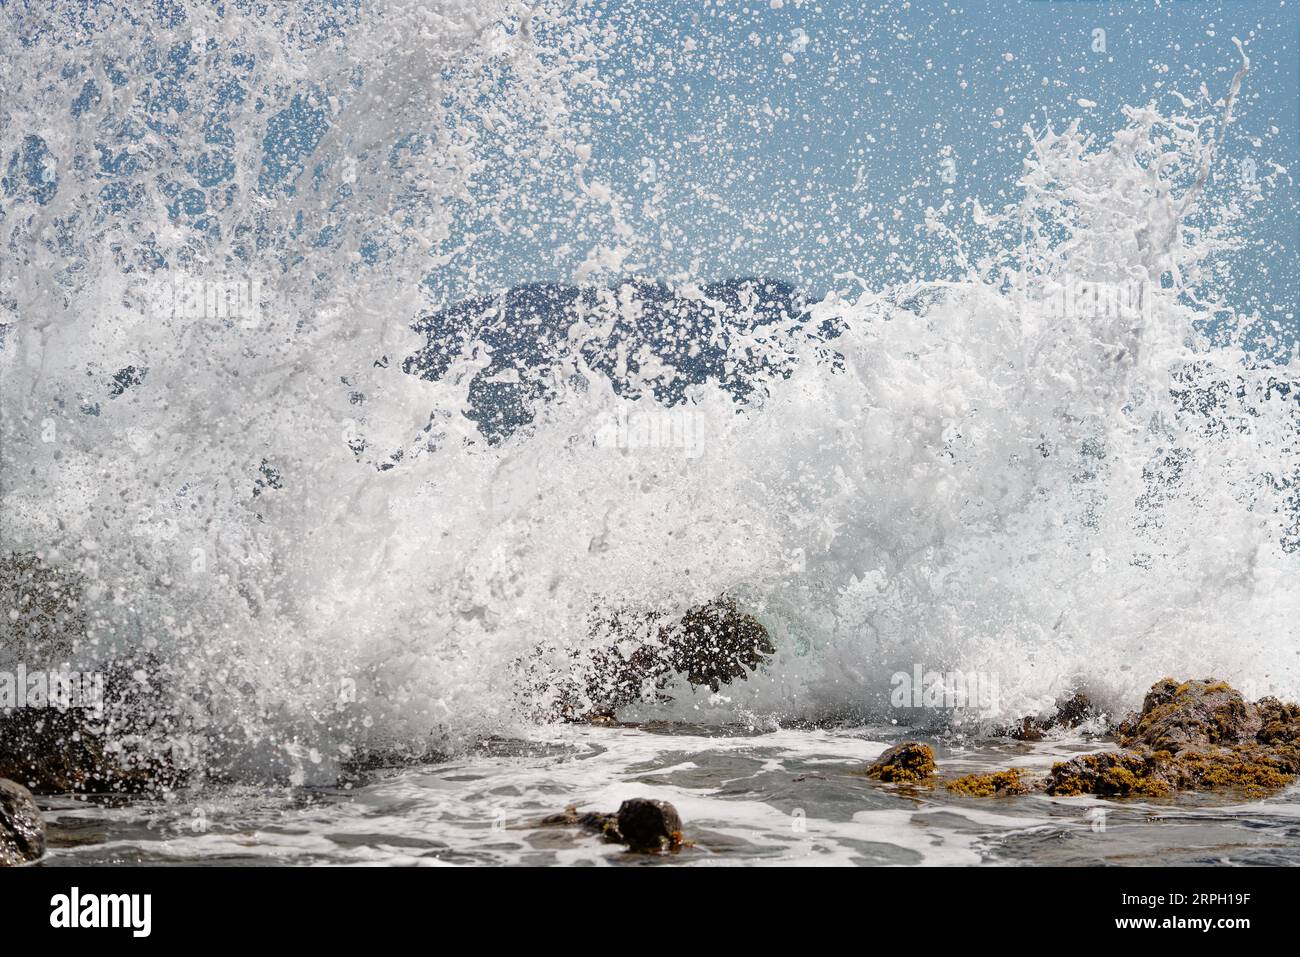 Eine Welle bricht auf große Steine im Wasser, Tausende von Tropfen Wasser funkeln im Sonnenlicht, Insel Silhouette im Hintergrund, Snapshot-Lage Stockfoto